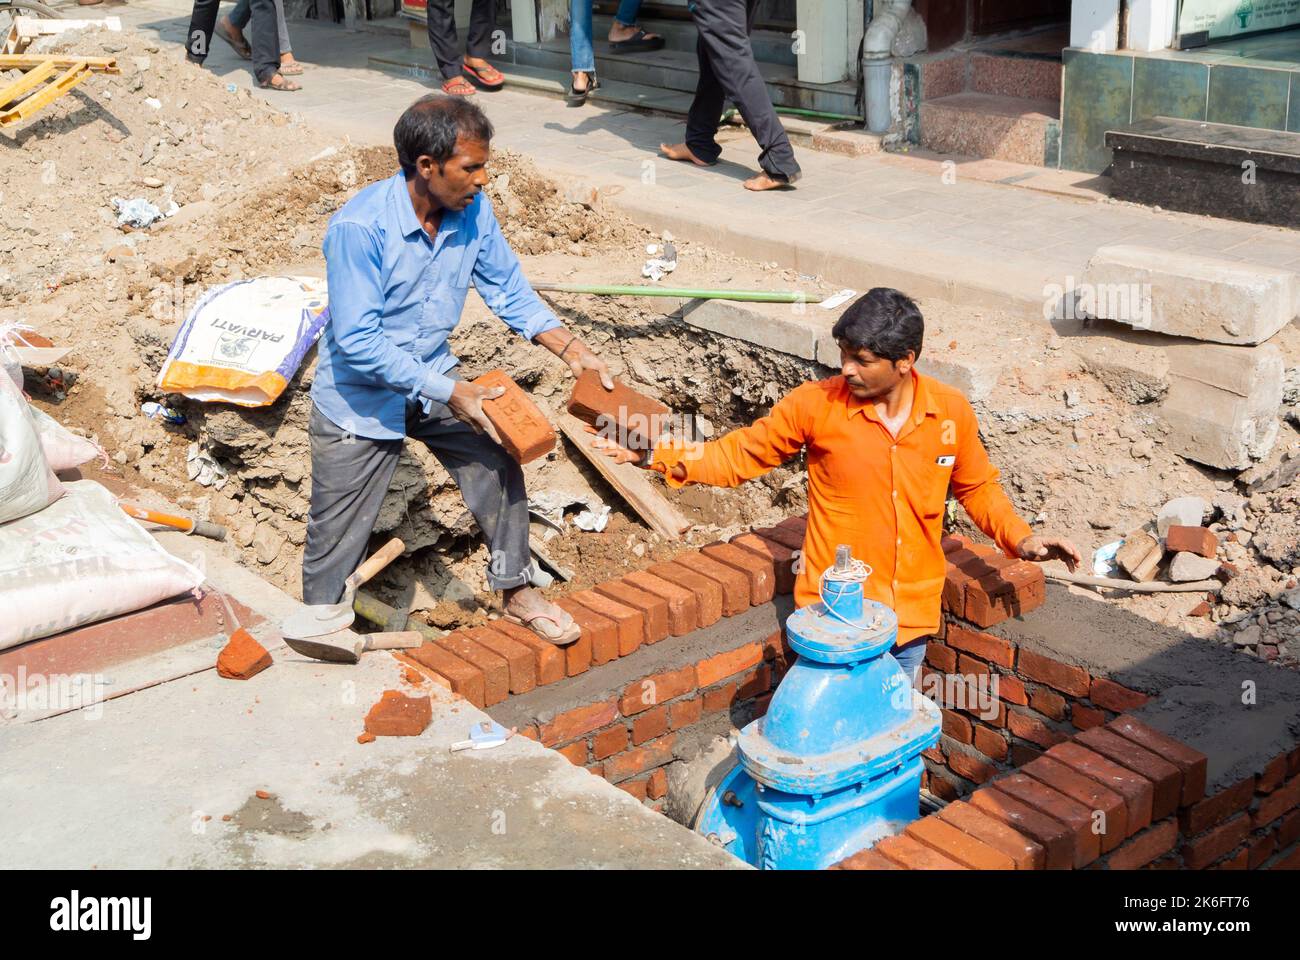 Una Trabajadora India Está Trabajando Su Trabajo Pesado Del Día Del Trabajo  En La Construcción. Ella Está Mezclando Cemento Y Mort Fotografía editorial  - Imagen de adulto, industrial: 219694282